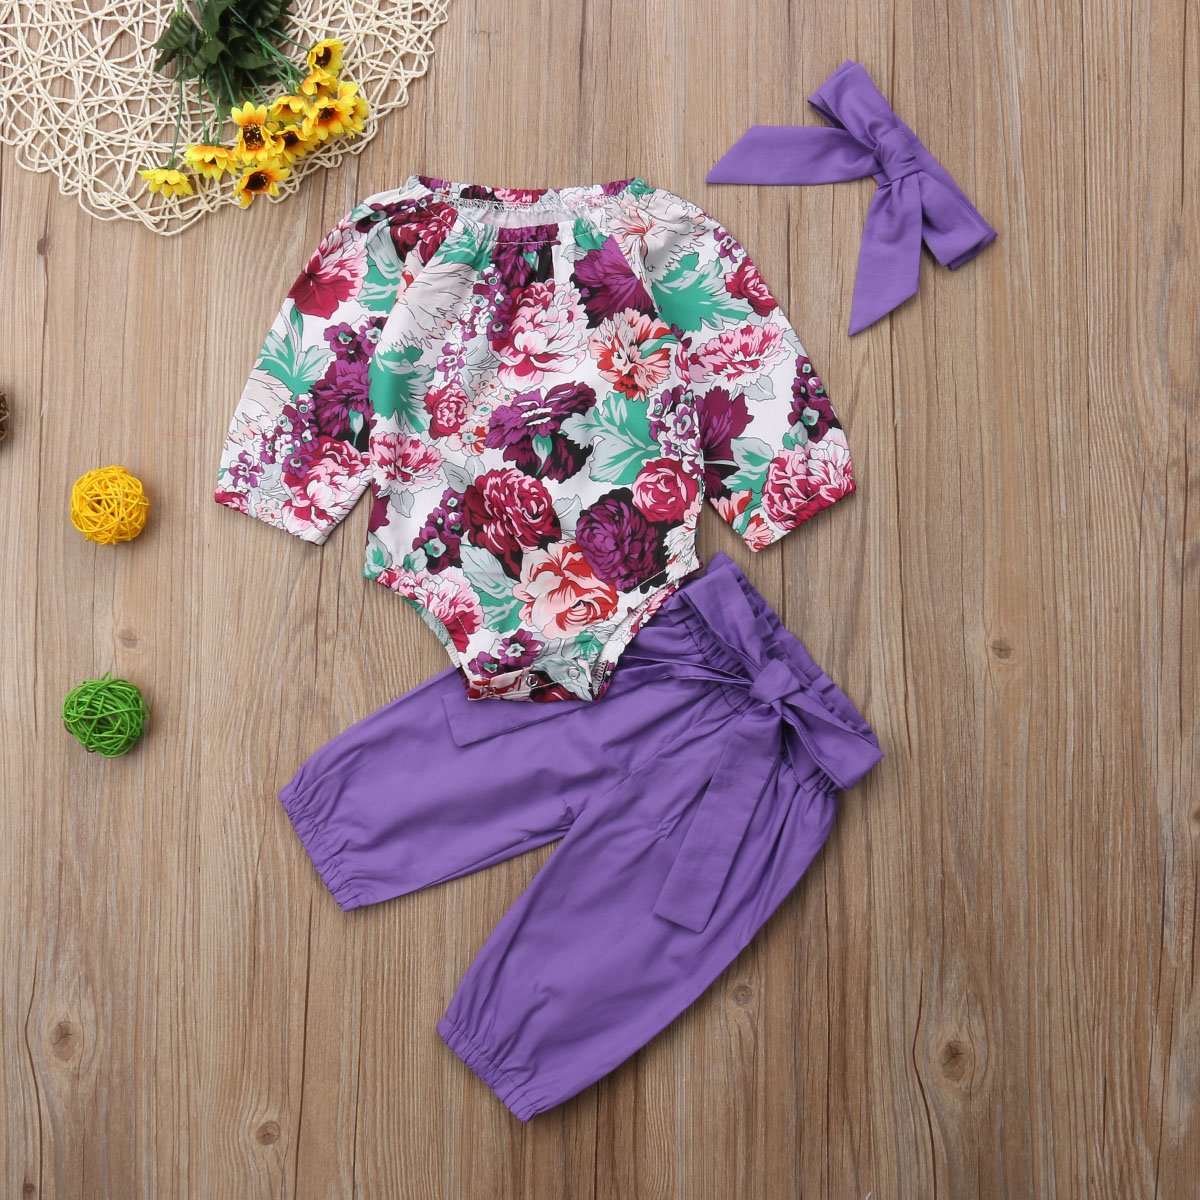 Conjunto de ropa para bebés y niñas, mameluco, pantalones florales, polainas